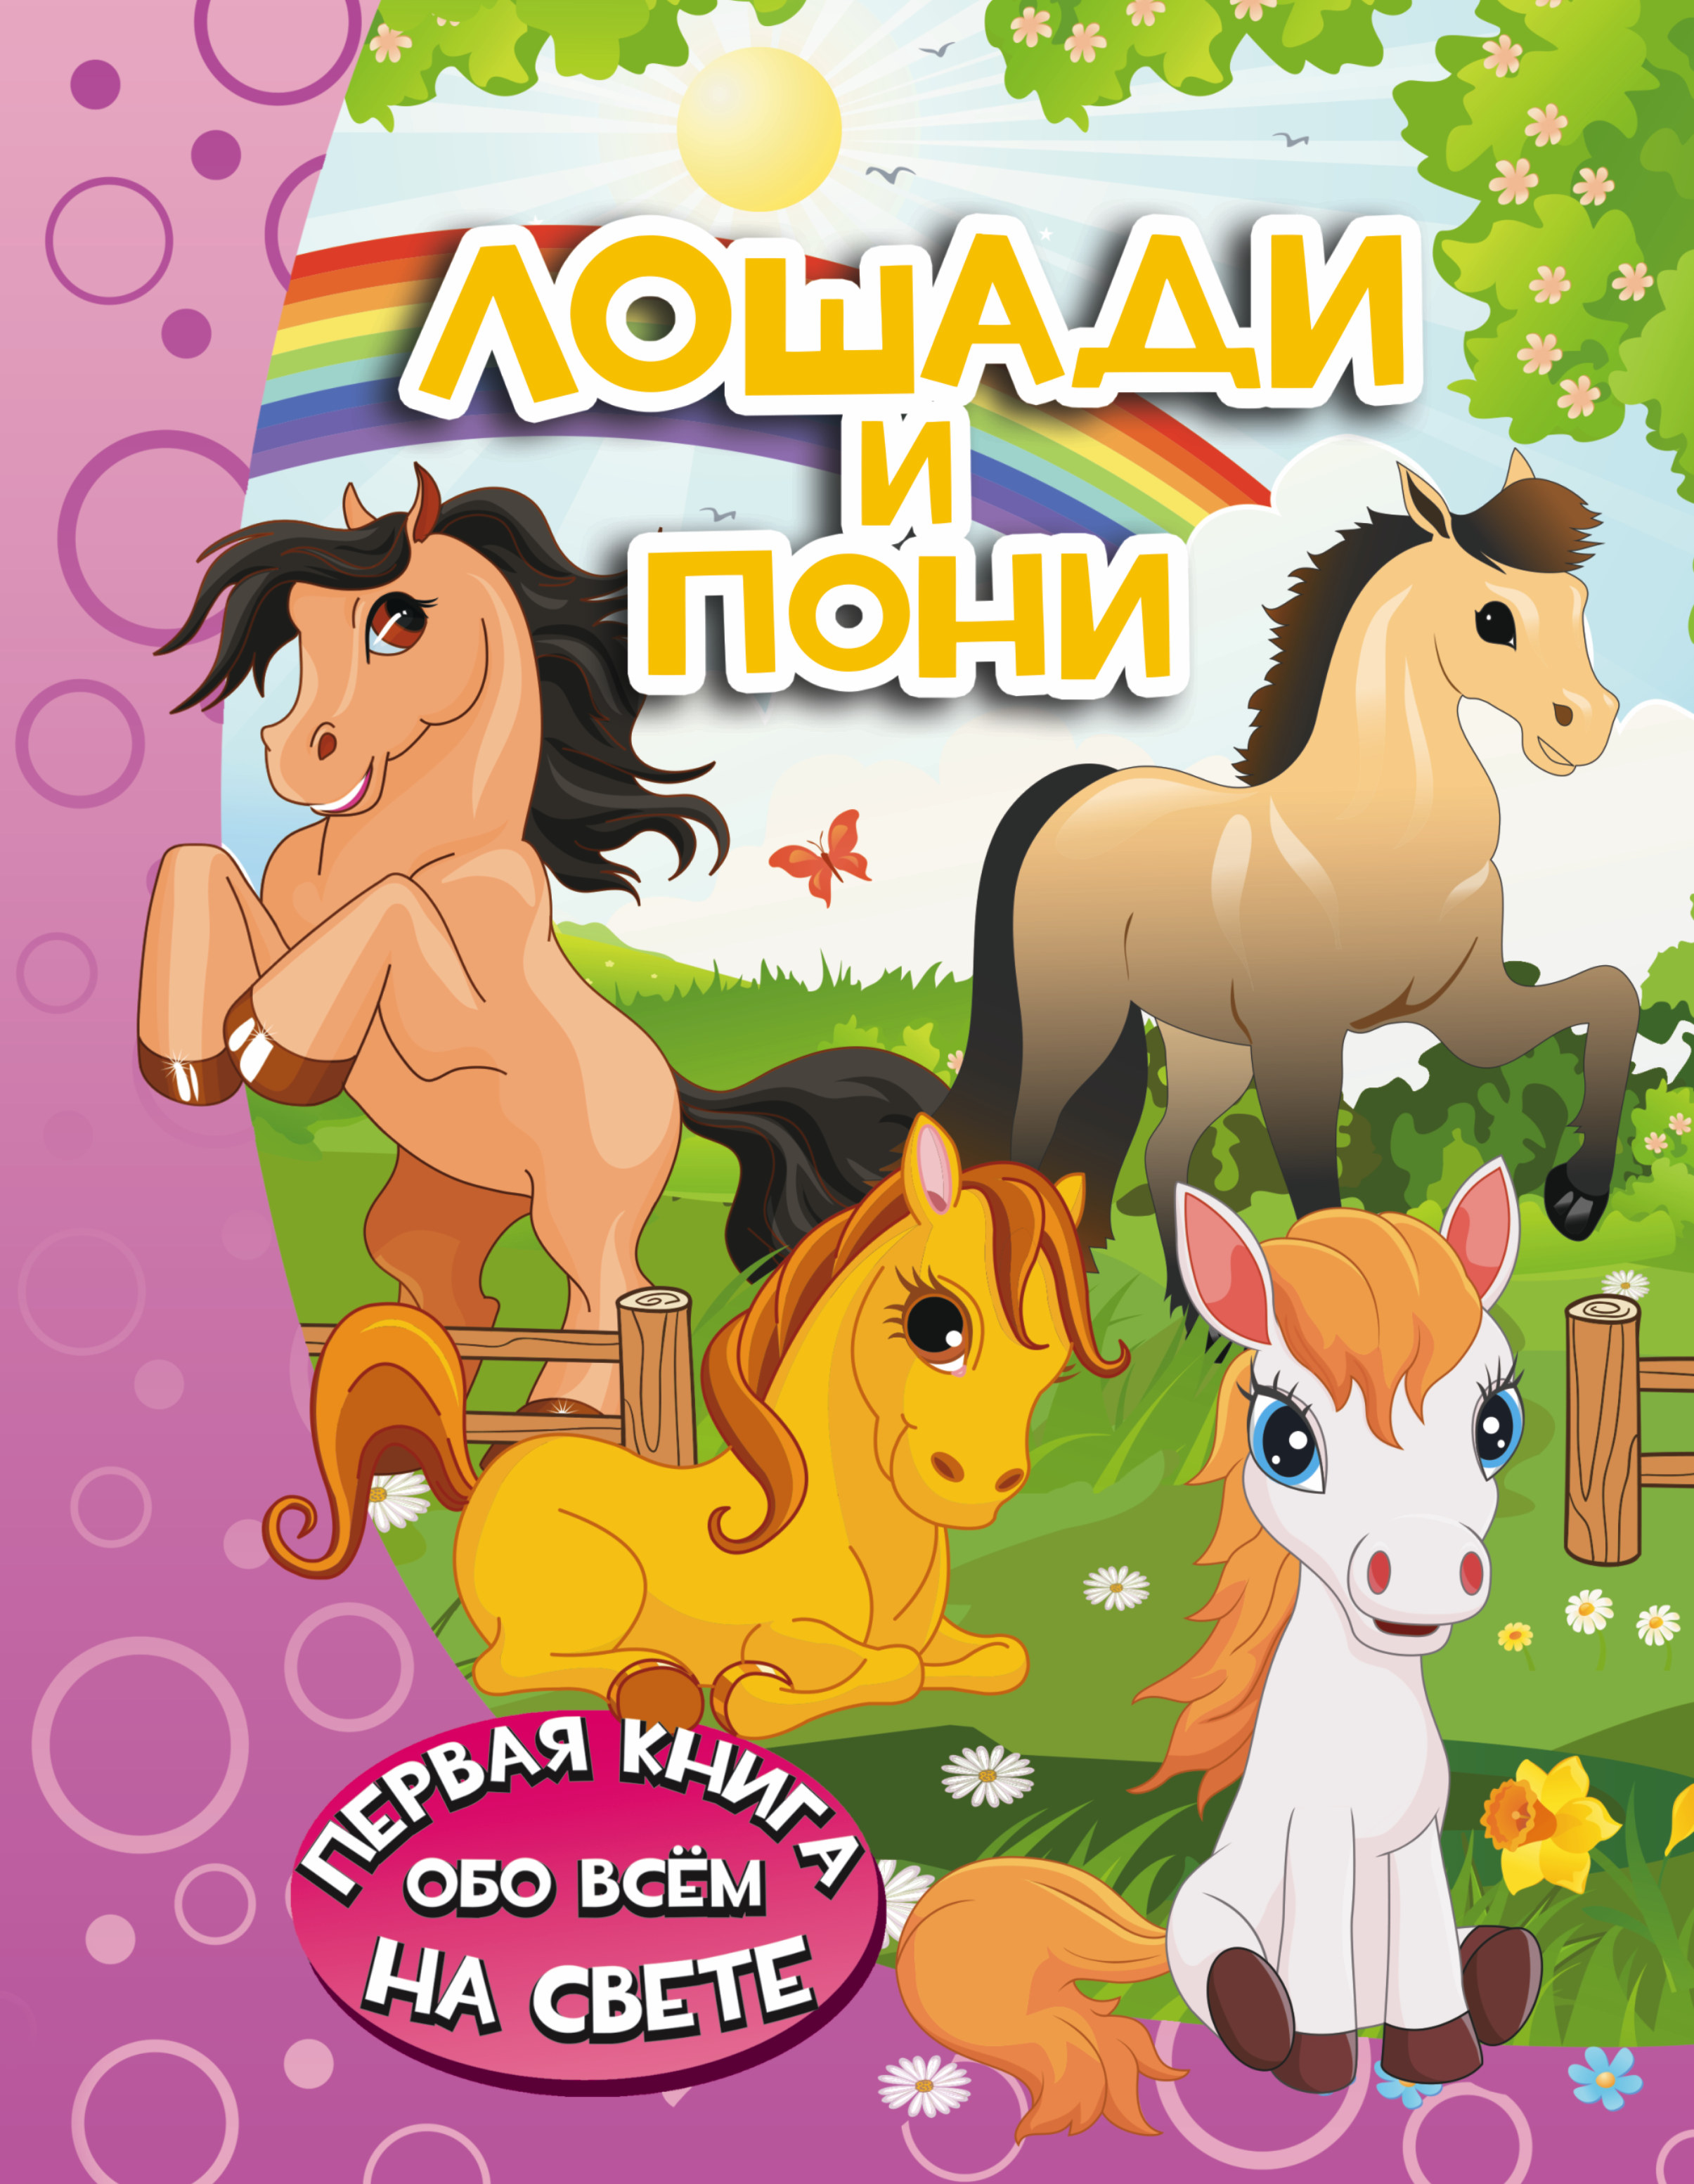 Купить книгу лошади. Книги о лошадках для детей. Книга лошади и пони. Книги о лошадях для детей. Детские книги про лошадей.